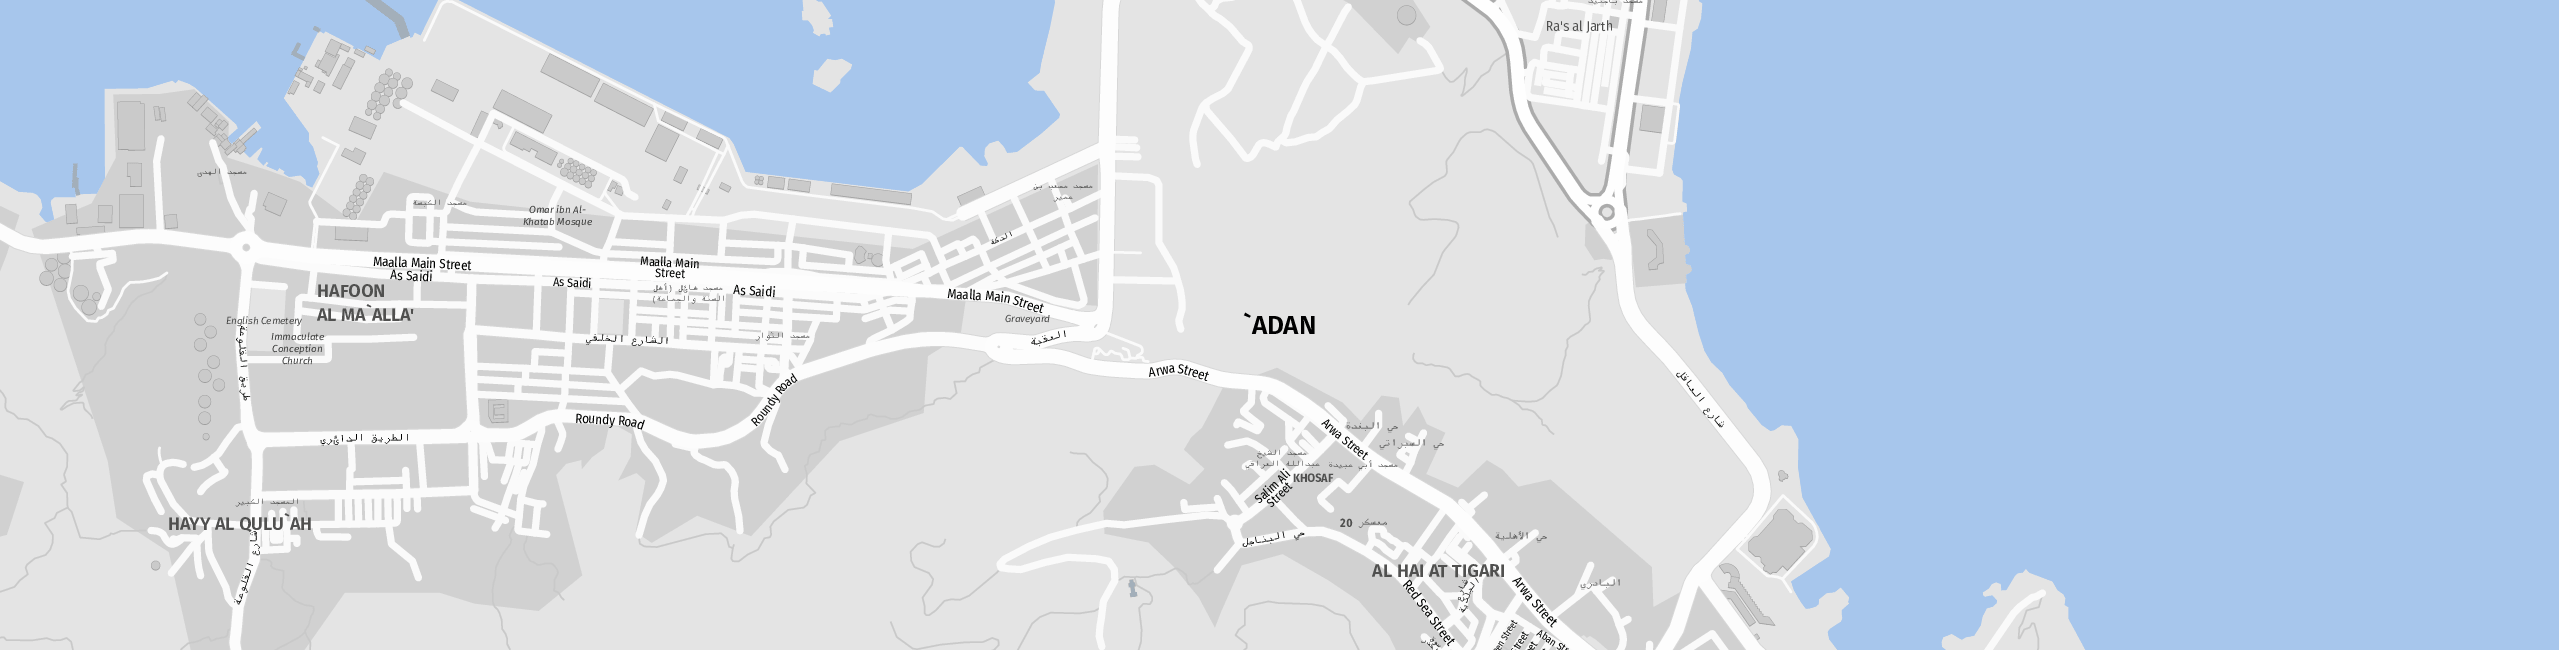 Stadtplan `Adan zum Downloaden.